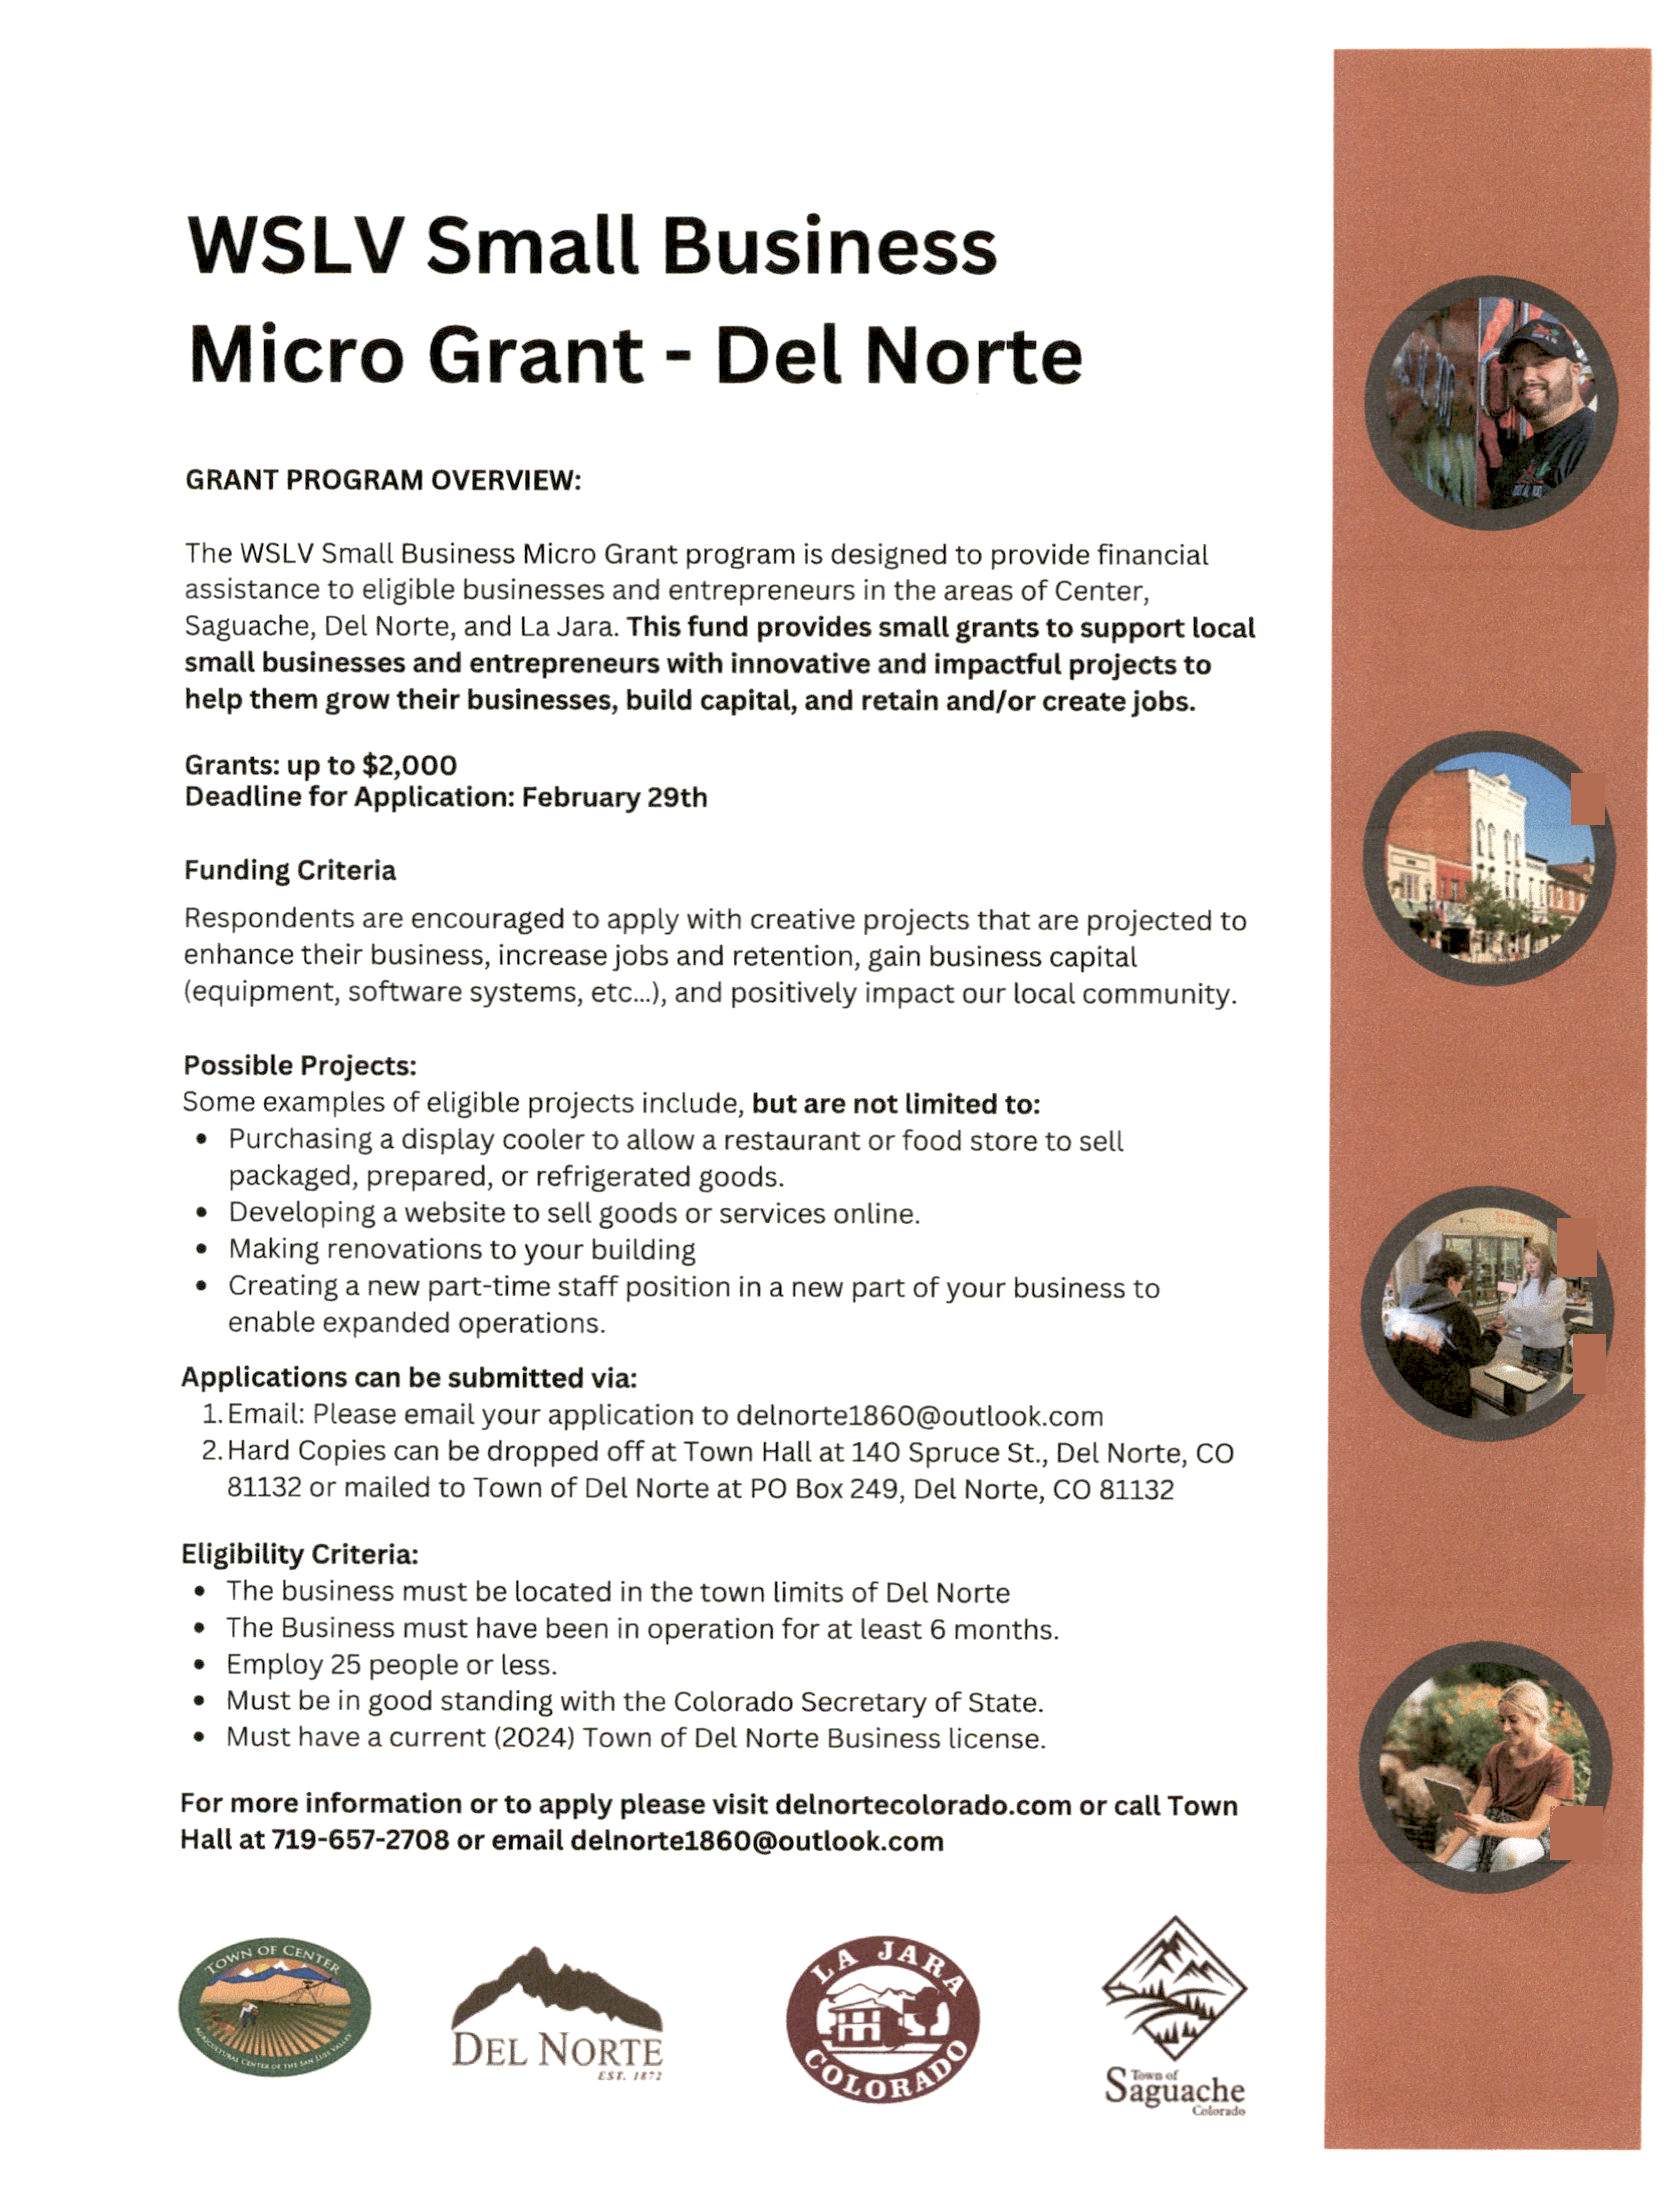 WSLV Micro Grant Program